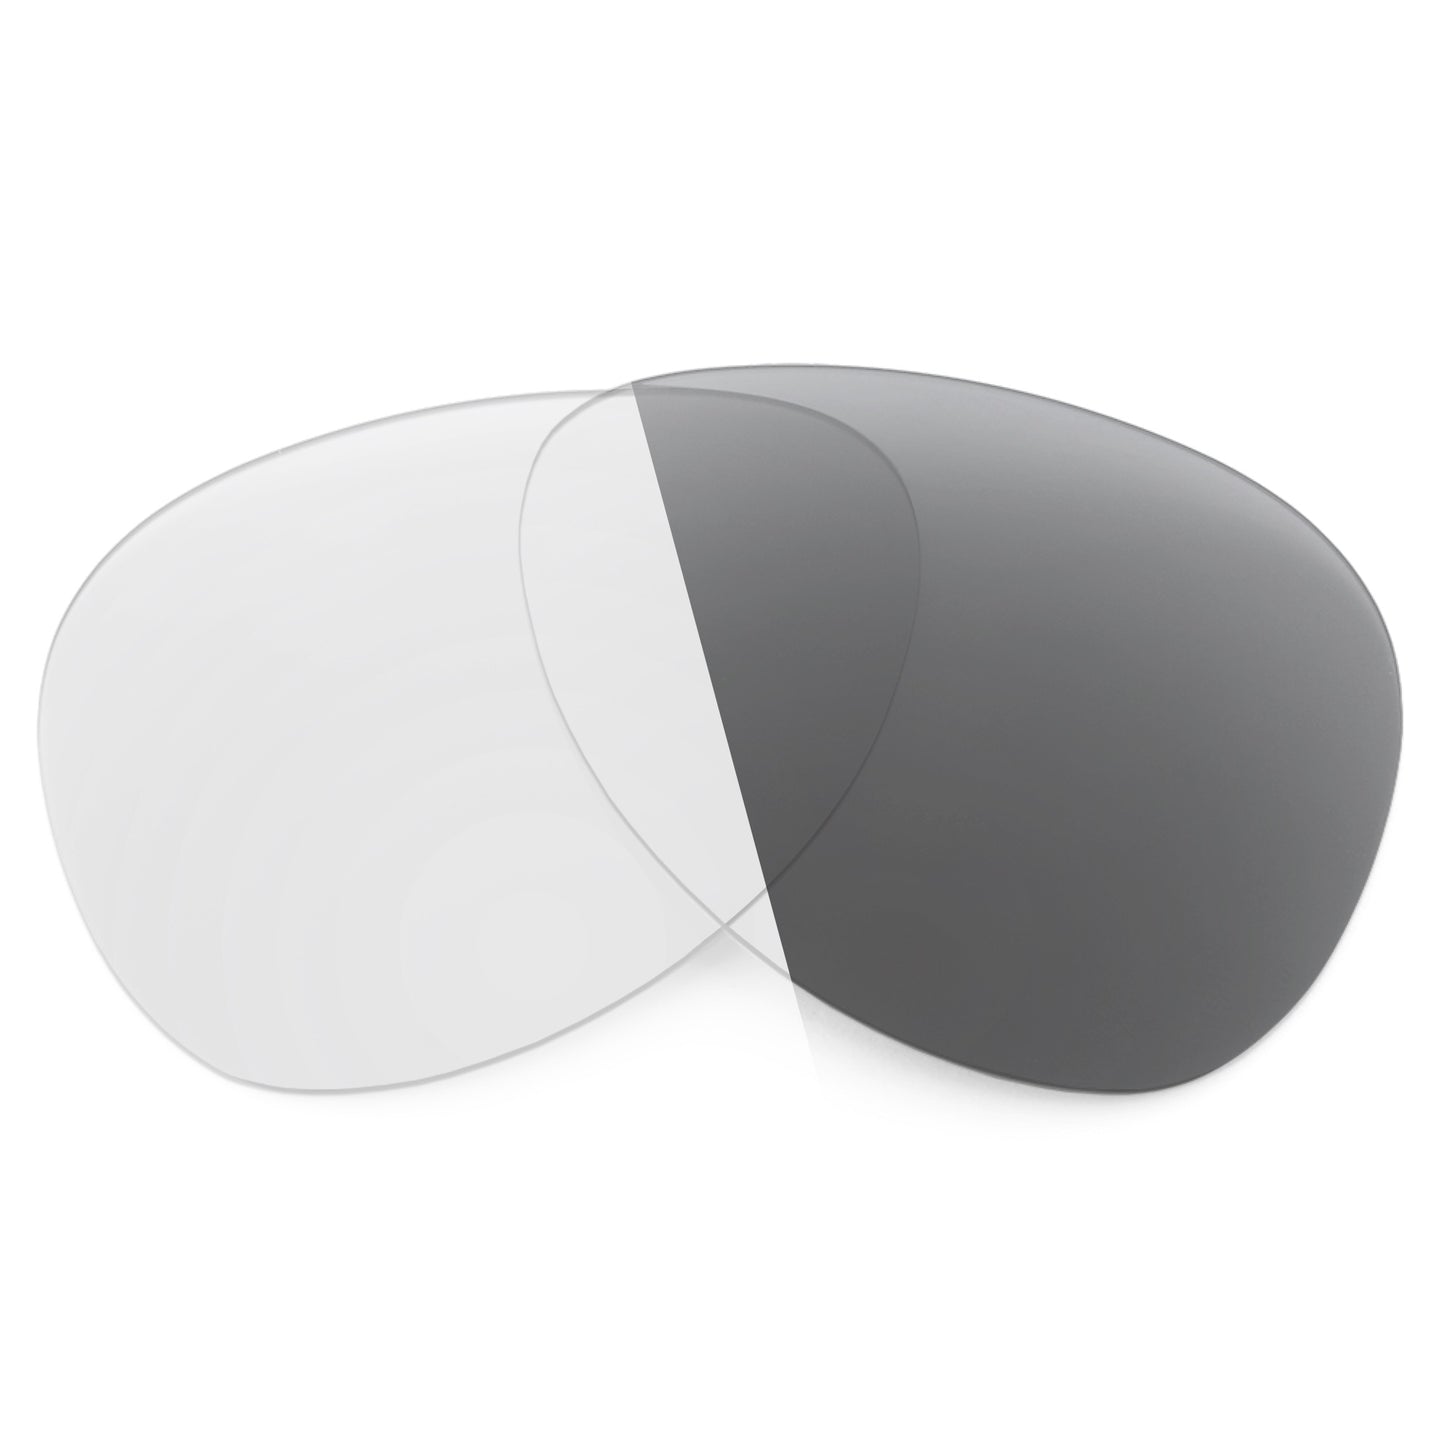 Revant replacement lenses for Oakley Elmont (Medium) Non-Polarized Adapt Gray Photochromic